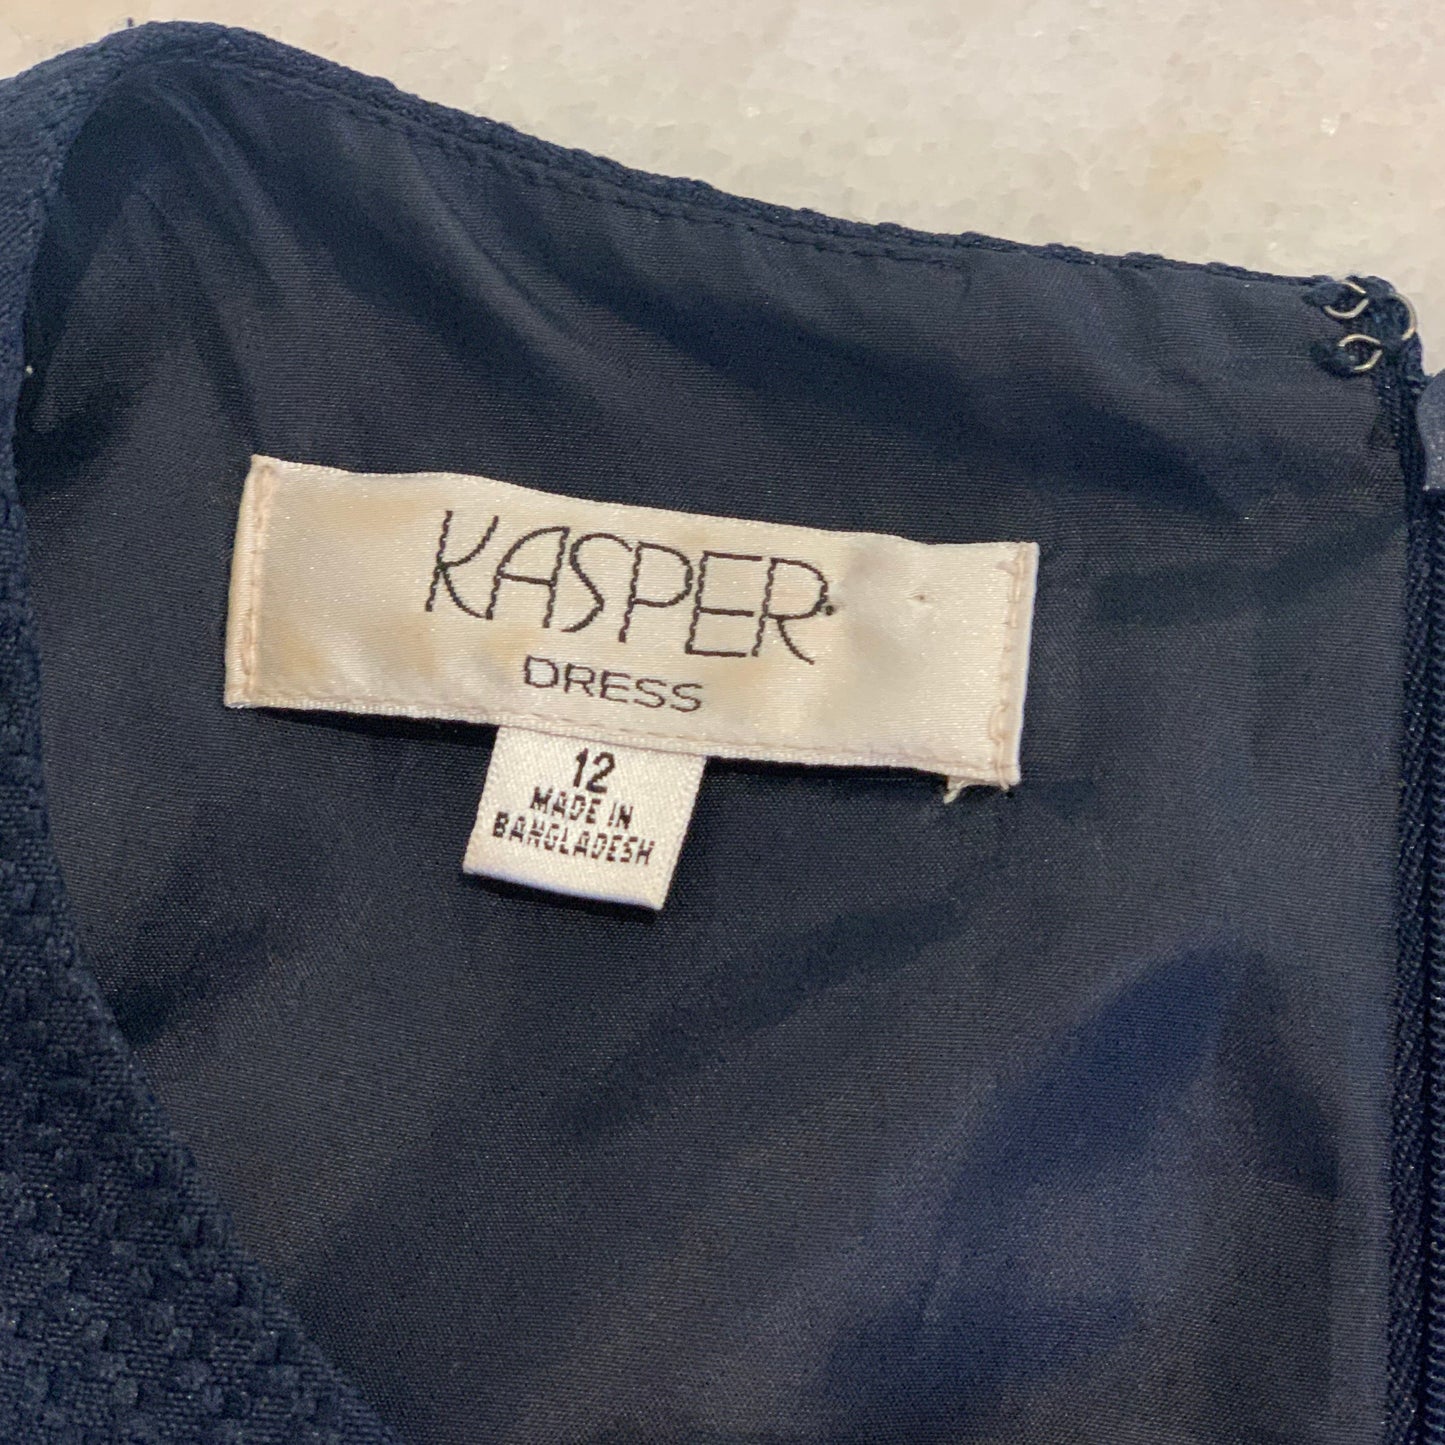 Kasper - Dress Dresses